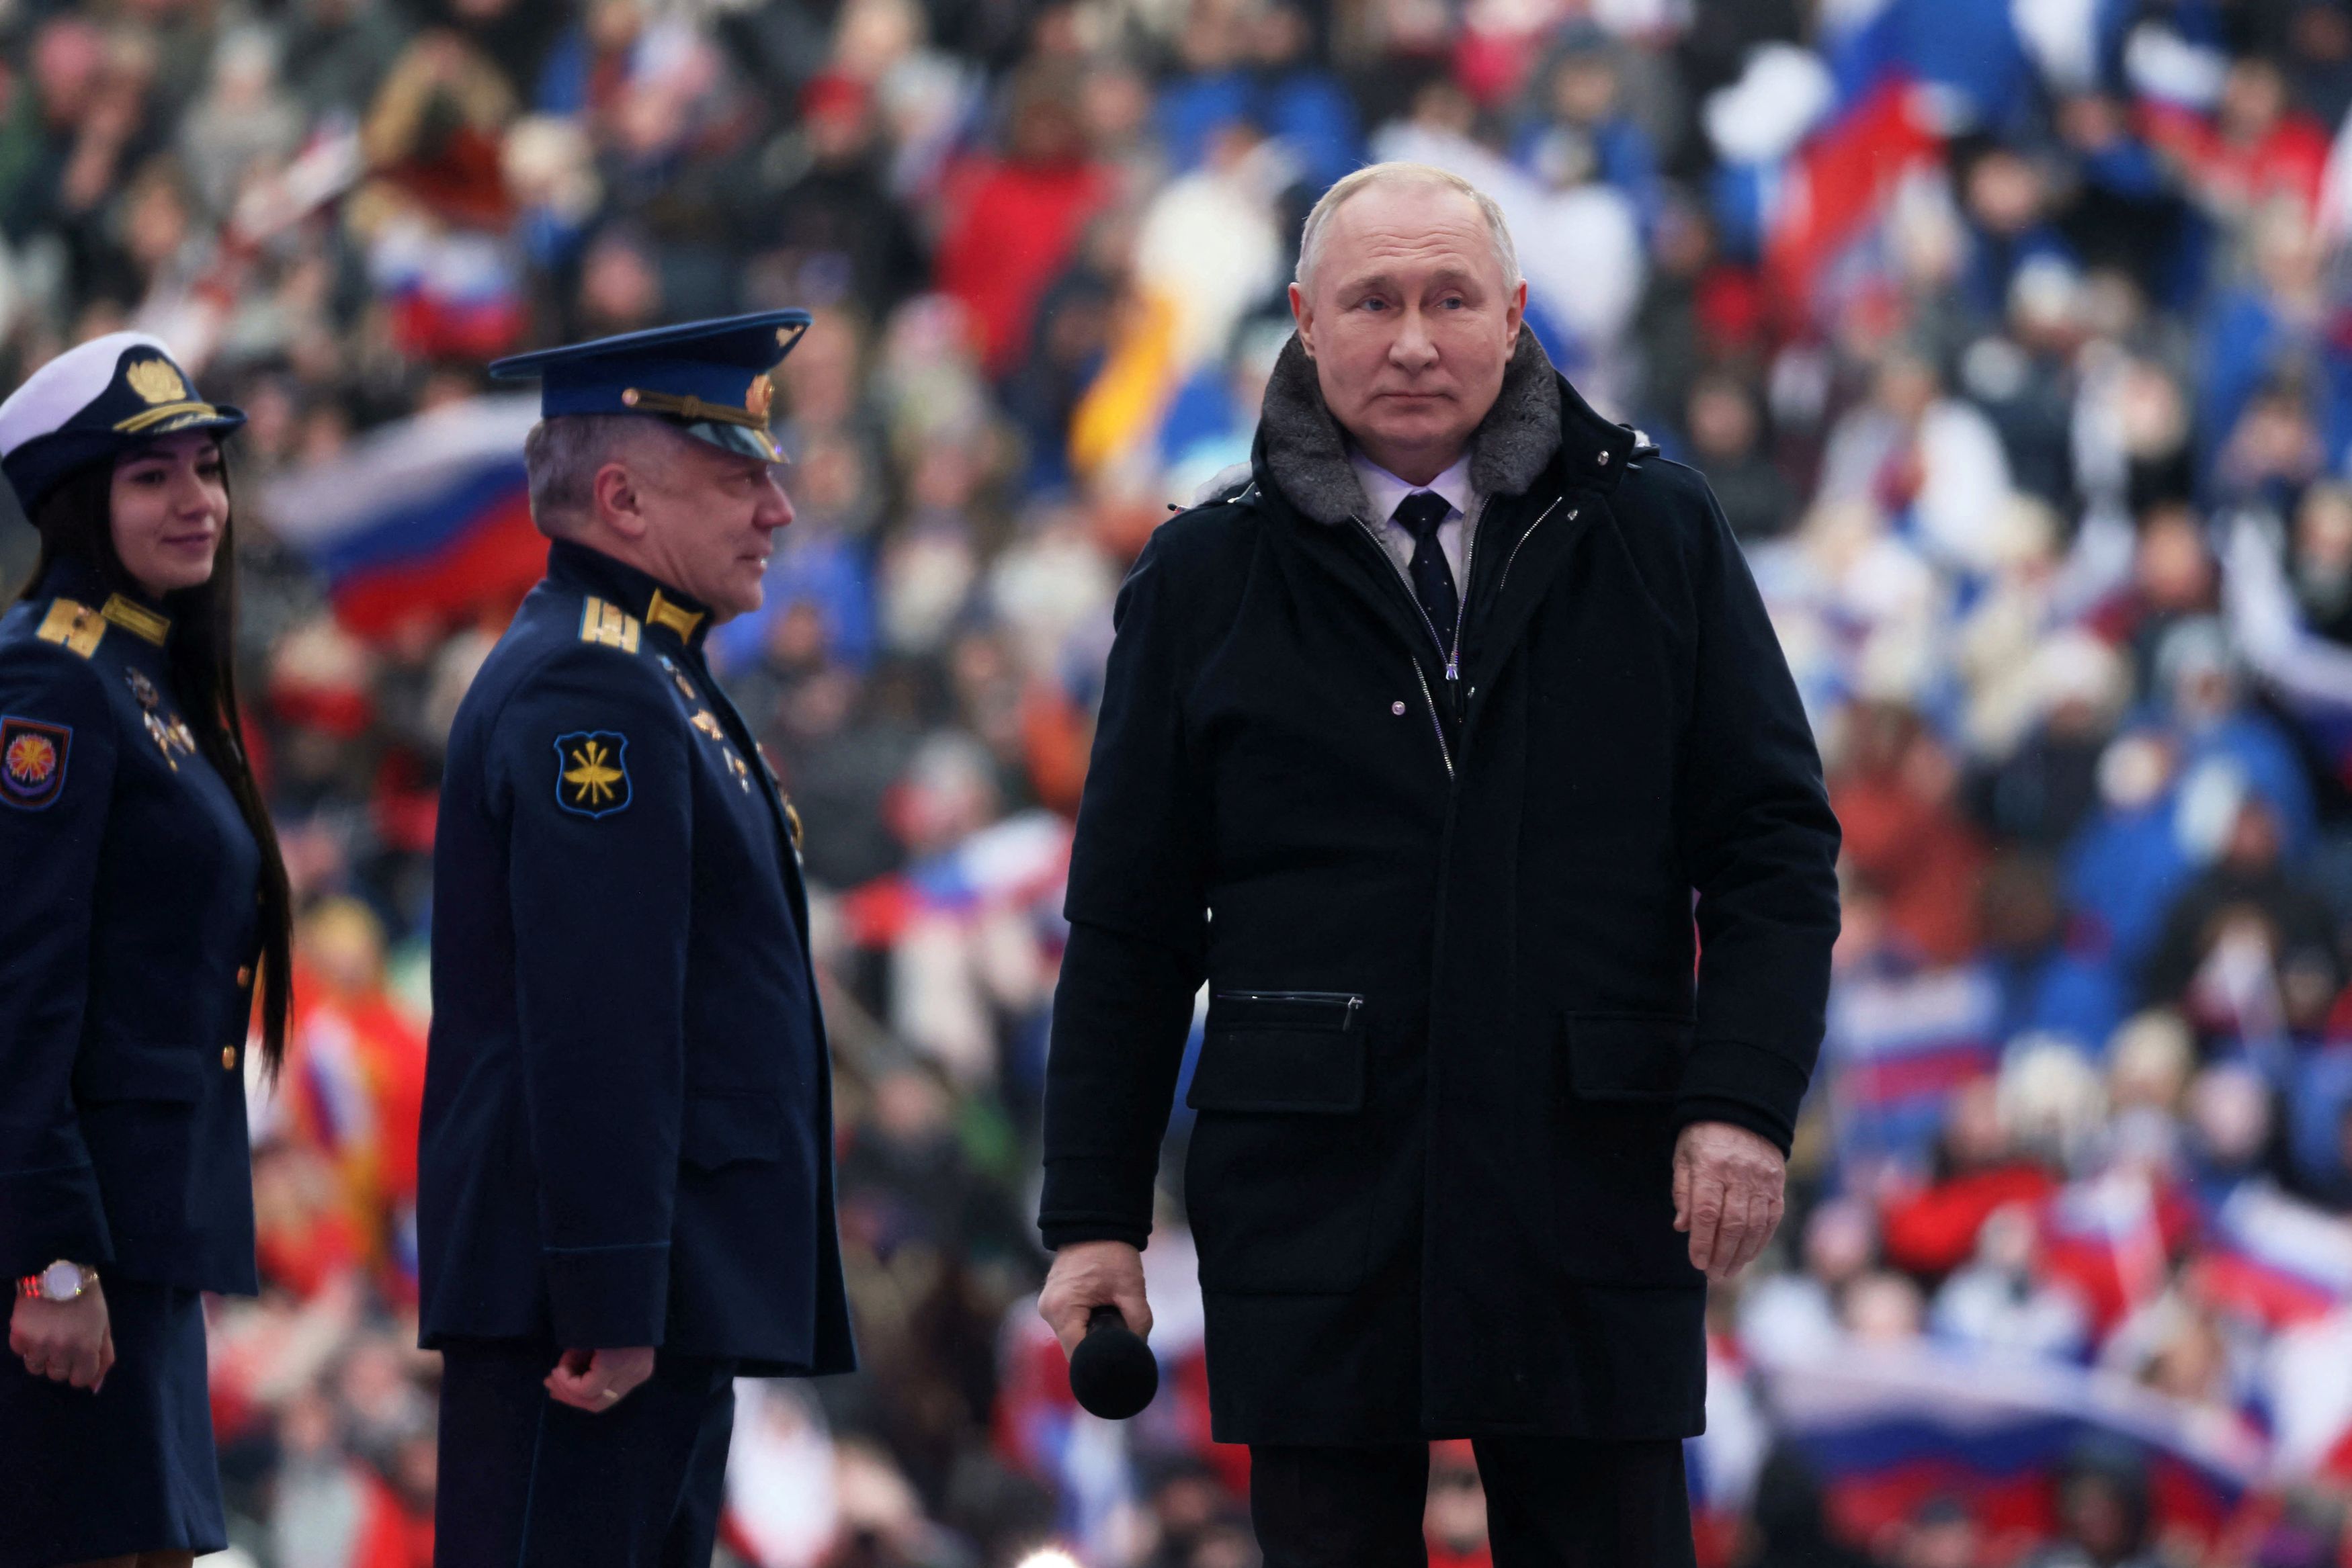 Ρωσία: Εγγυητής της σταθερότητας της χώρας ο στρατός, λέει ο Πούτιν